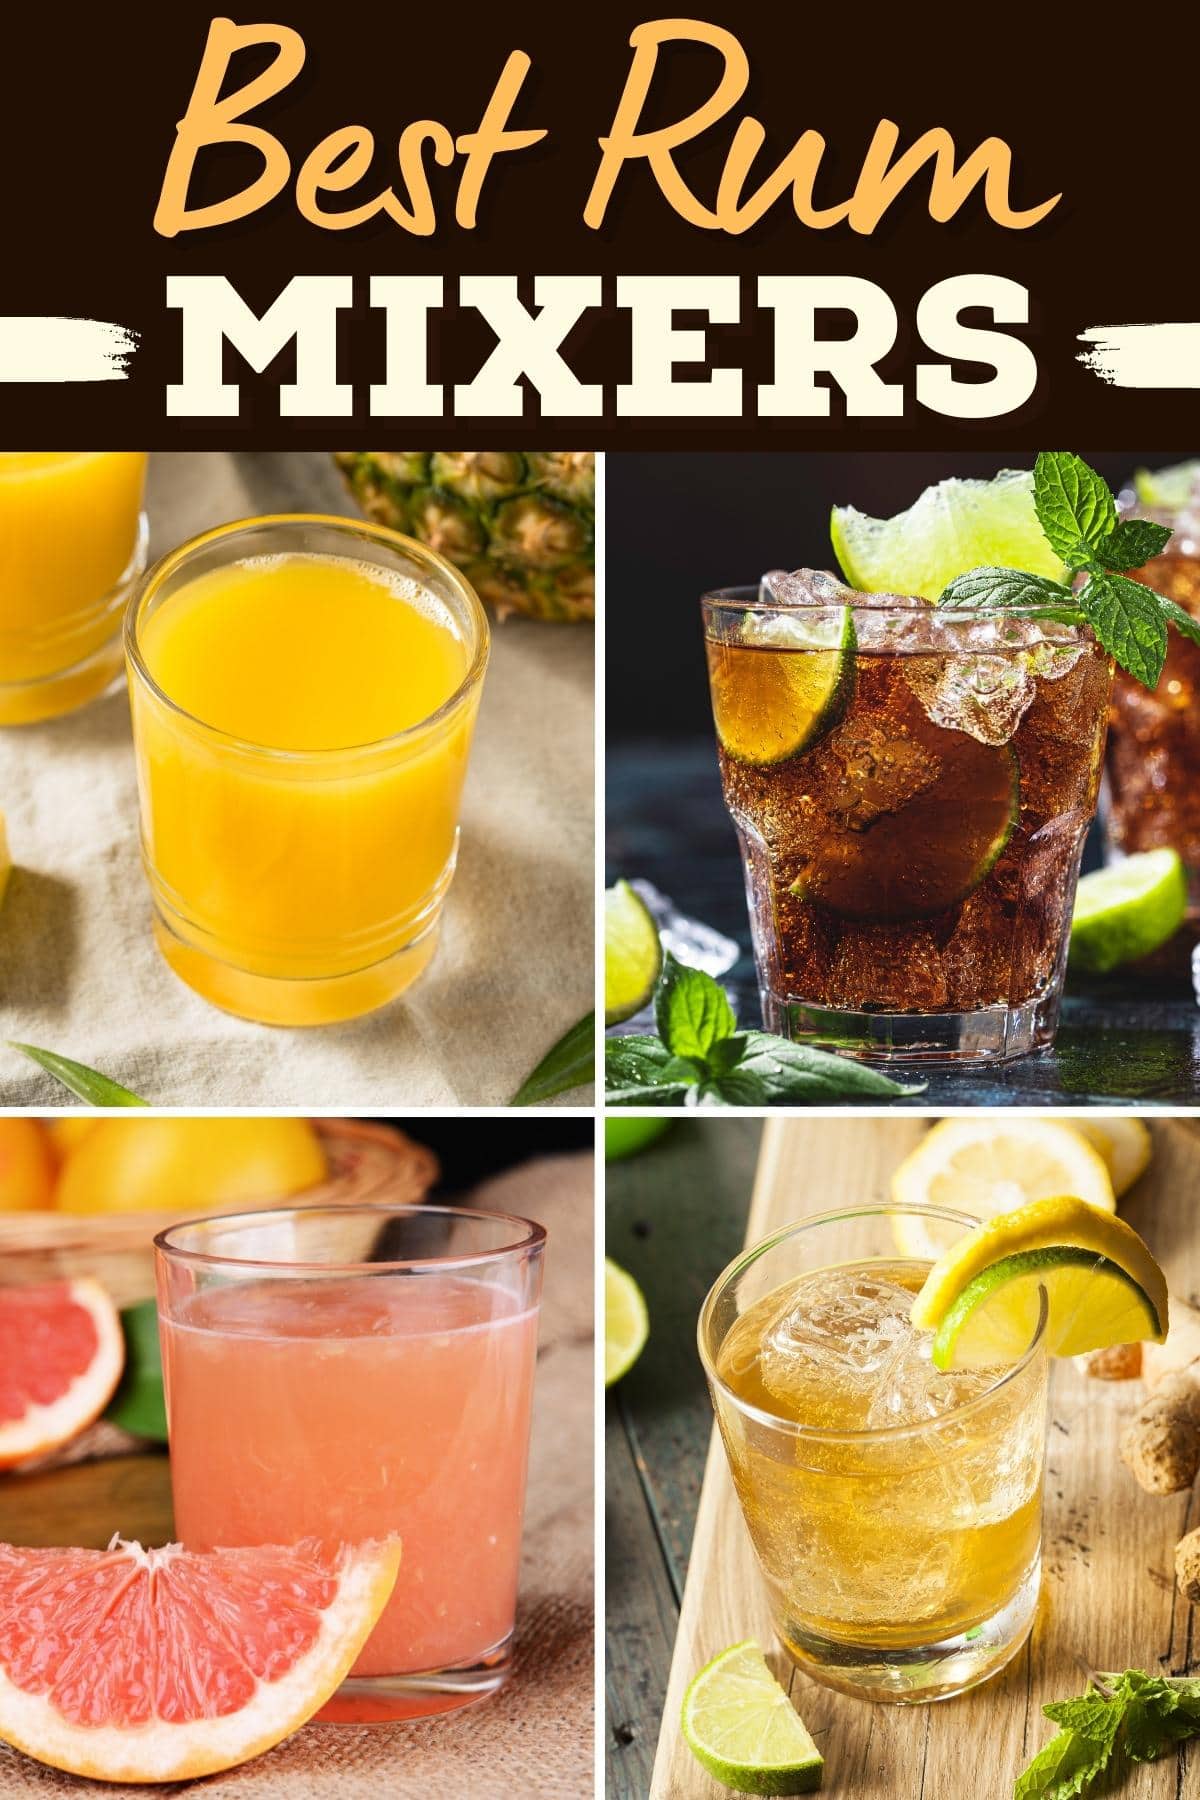 Best Rum Mixers